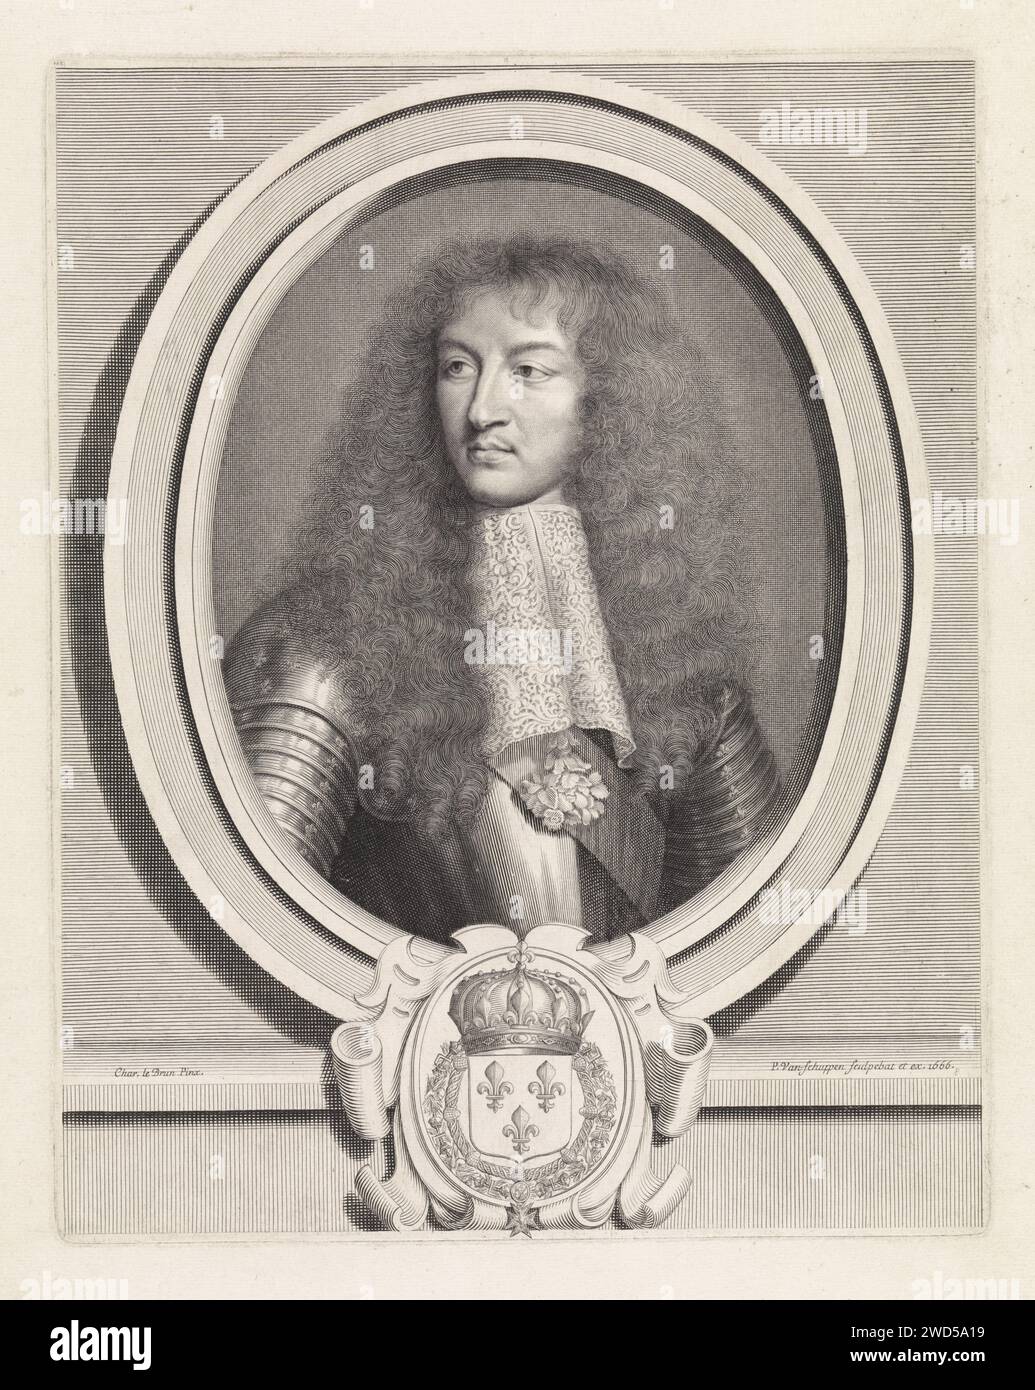 Portrait de Louis XIV, roi de France, avec col en dentelle, Pieter van Schuppen, d'après Charles le Brun, gravure sur papier Paris en 1666 Banque D'Images